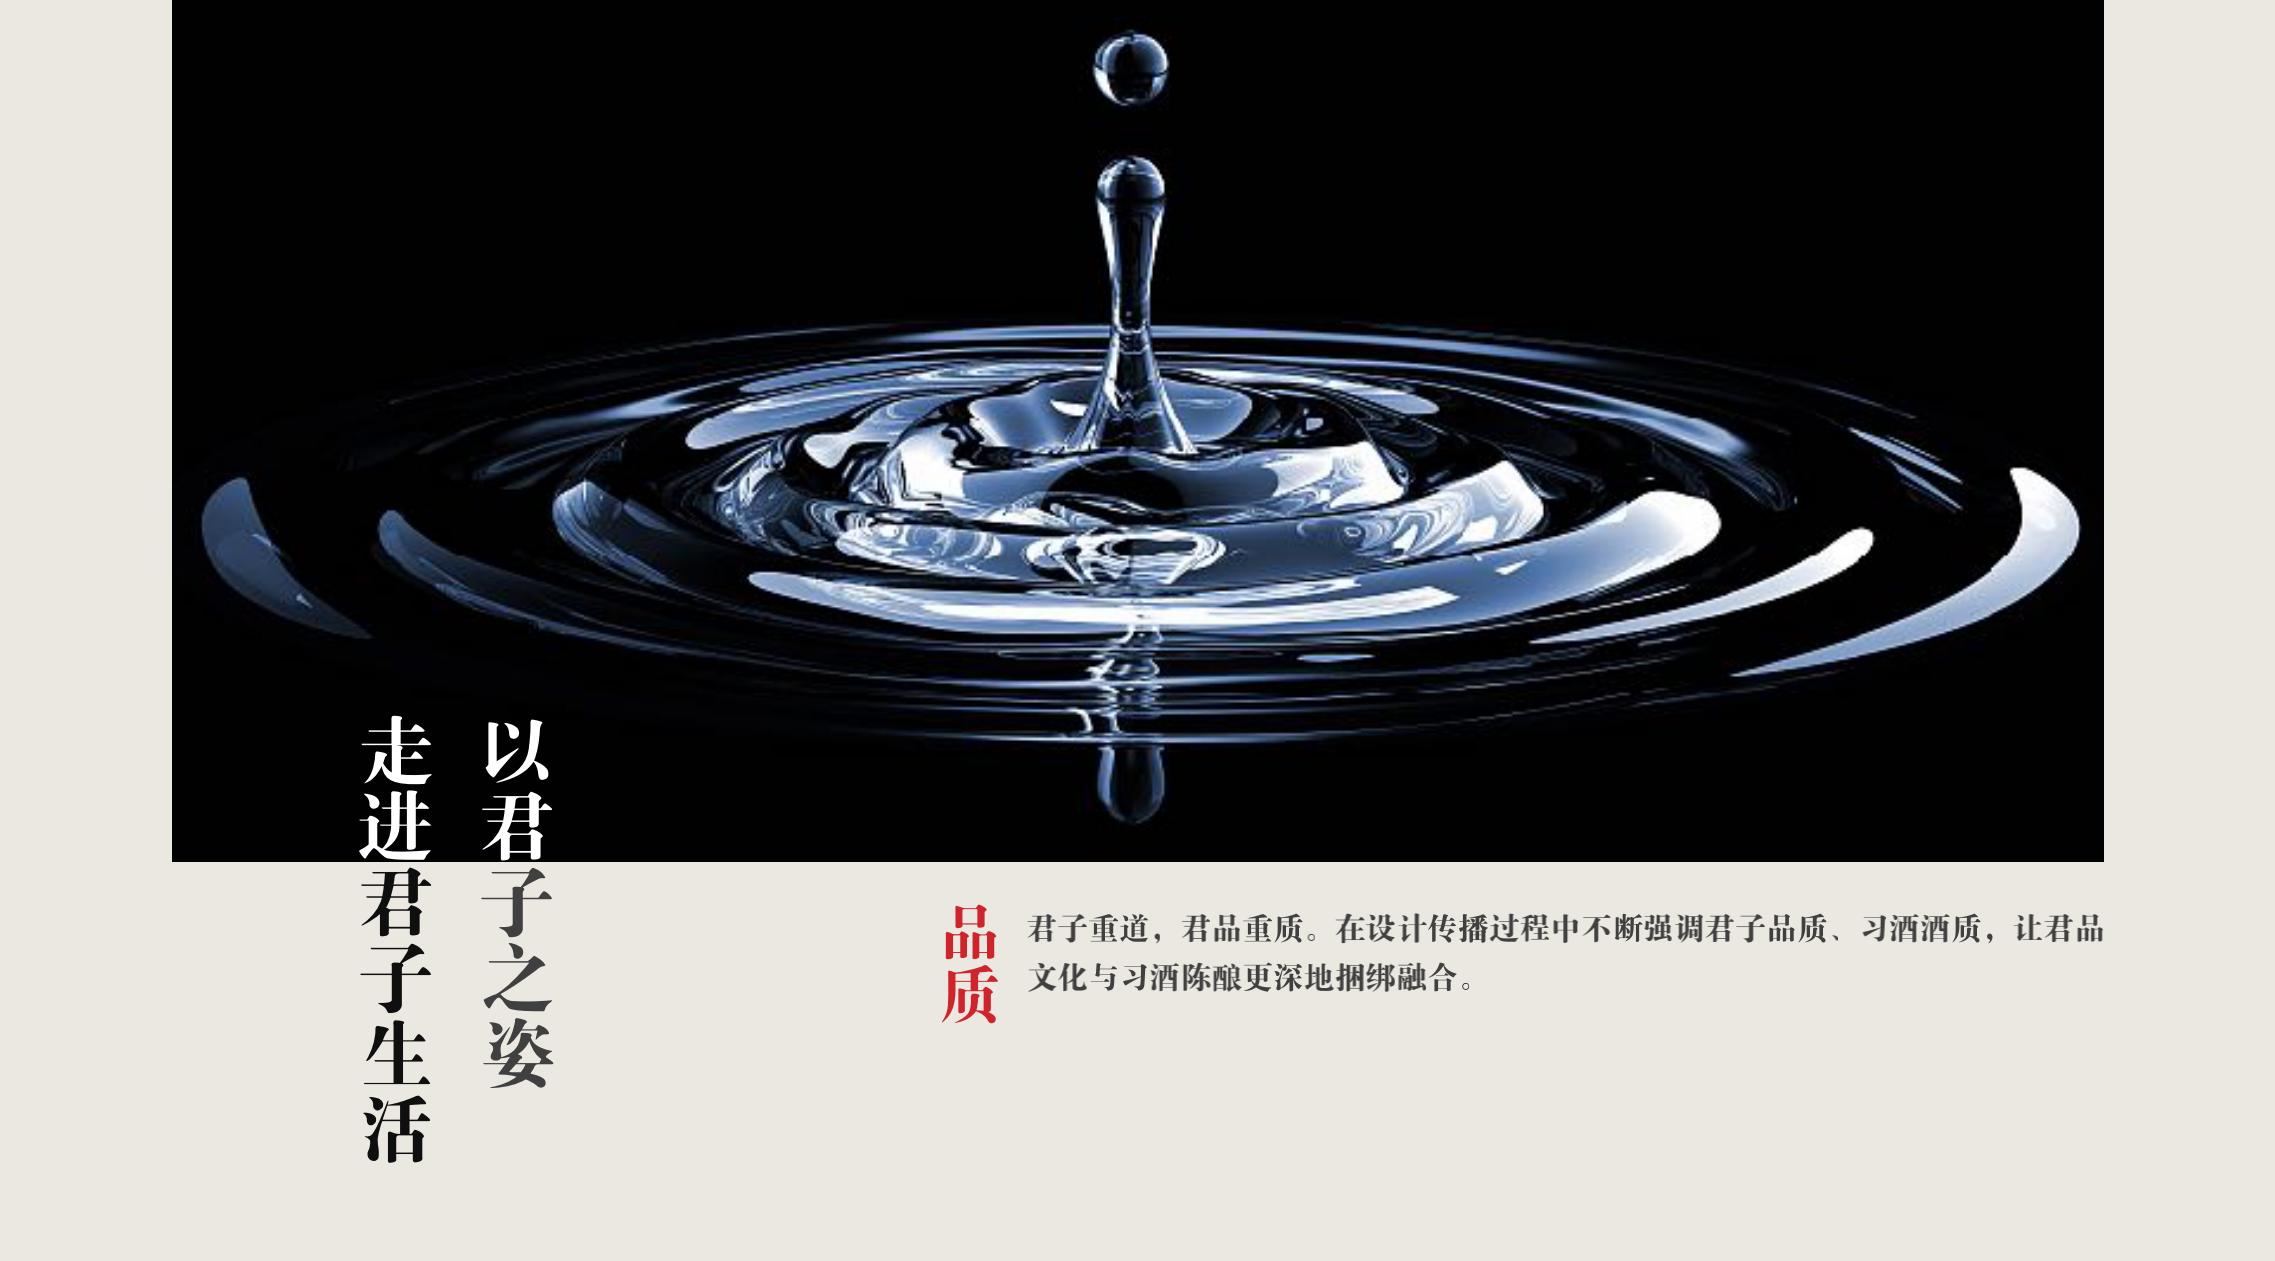 品牌策划 | 习酒平面图创意设计方案|广州活动策划